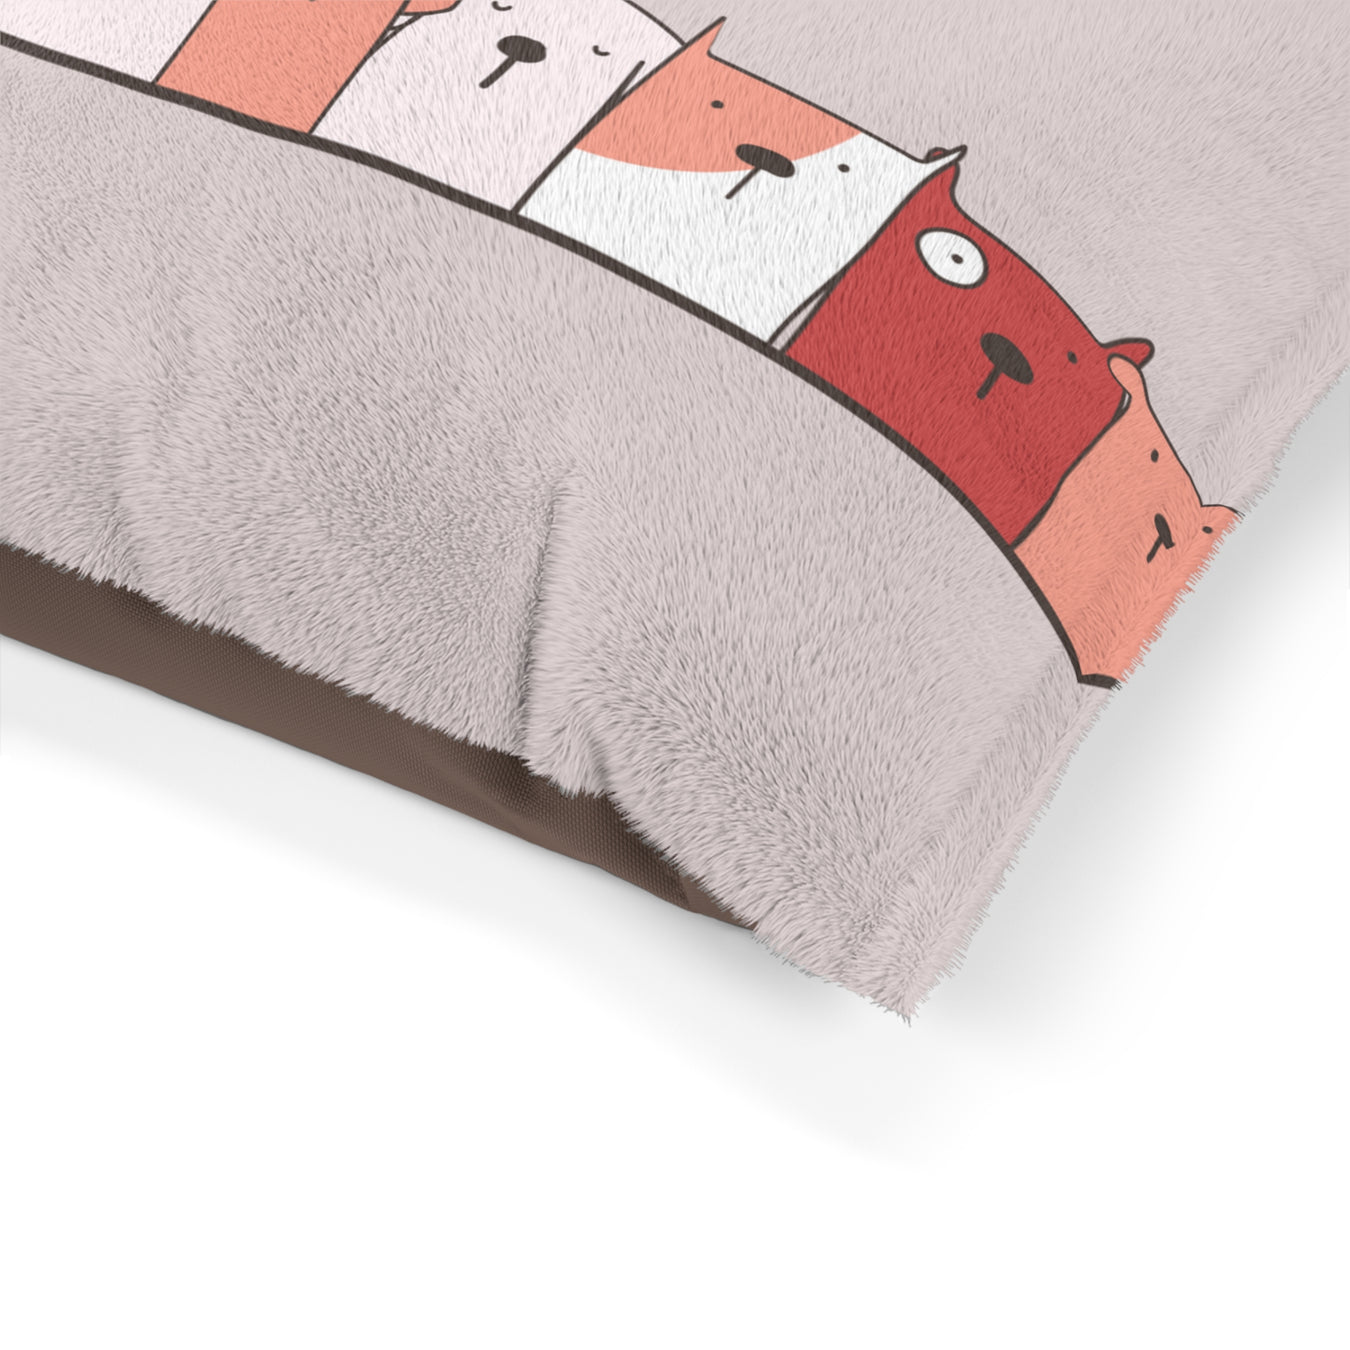 Snuggle Pillow Pet Beds